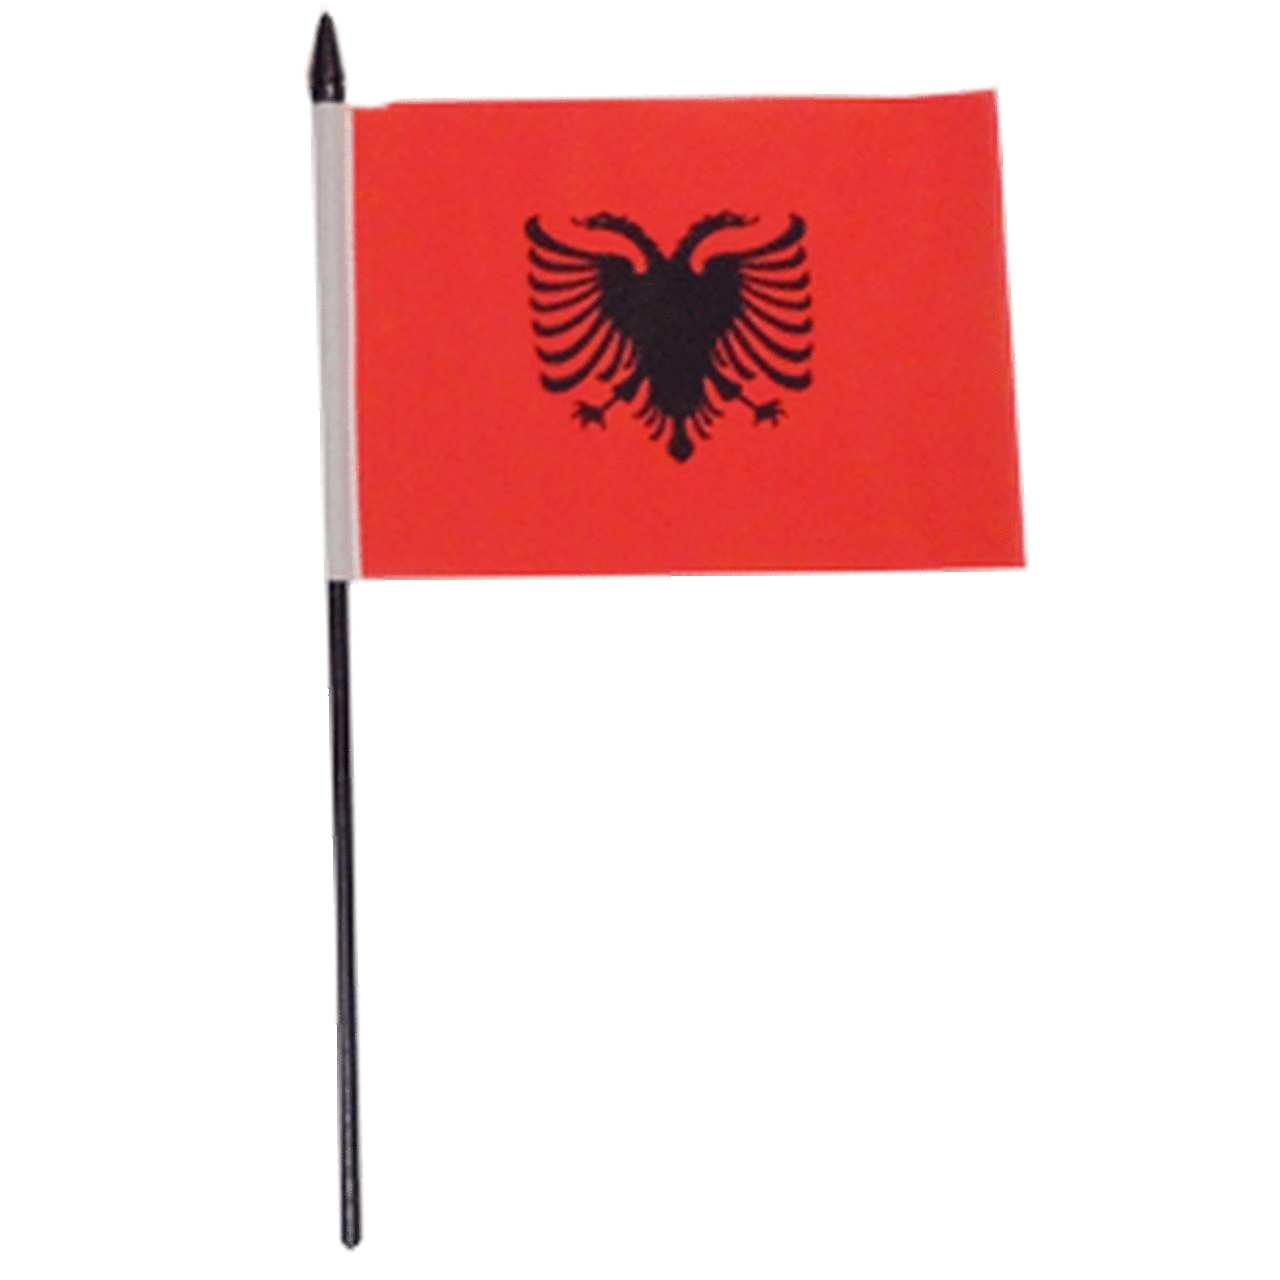 Albania Flag PNG Photo Image